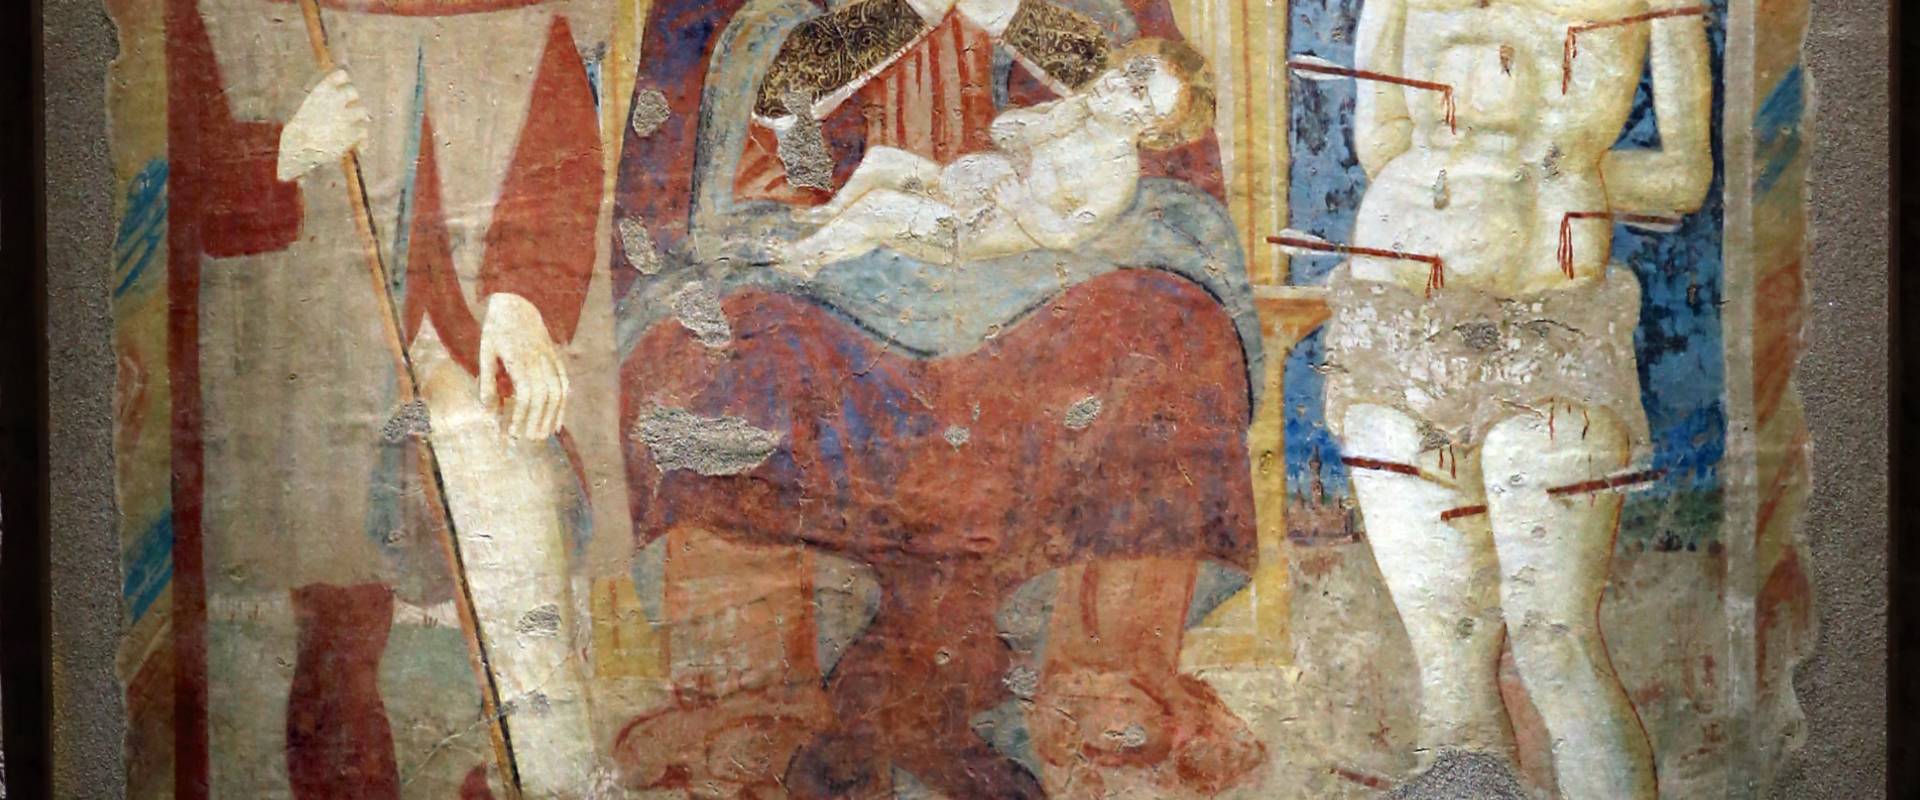 Scuola parmense, madonna col bambino in trono tra i ss. rocco e sebastiano, 1490 ca, dal castello di torrechiara foto di Sailko